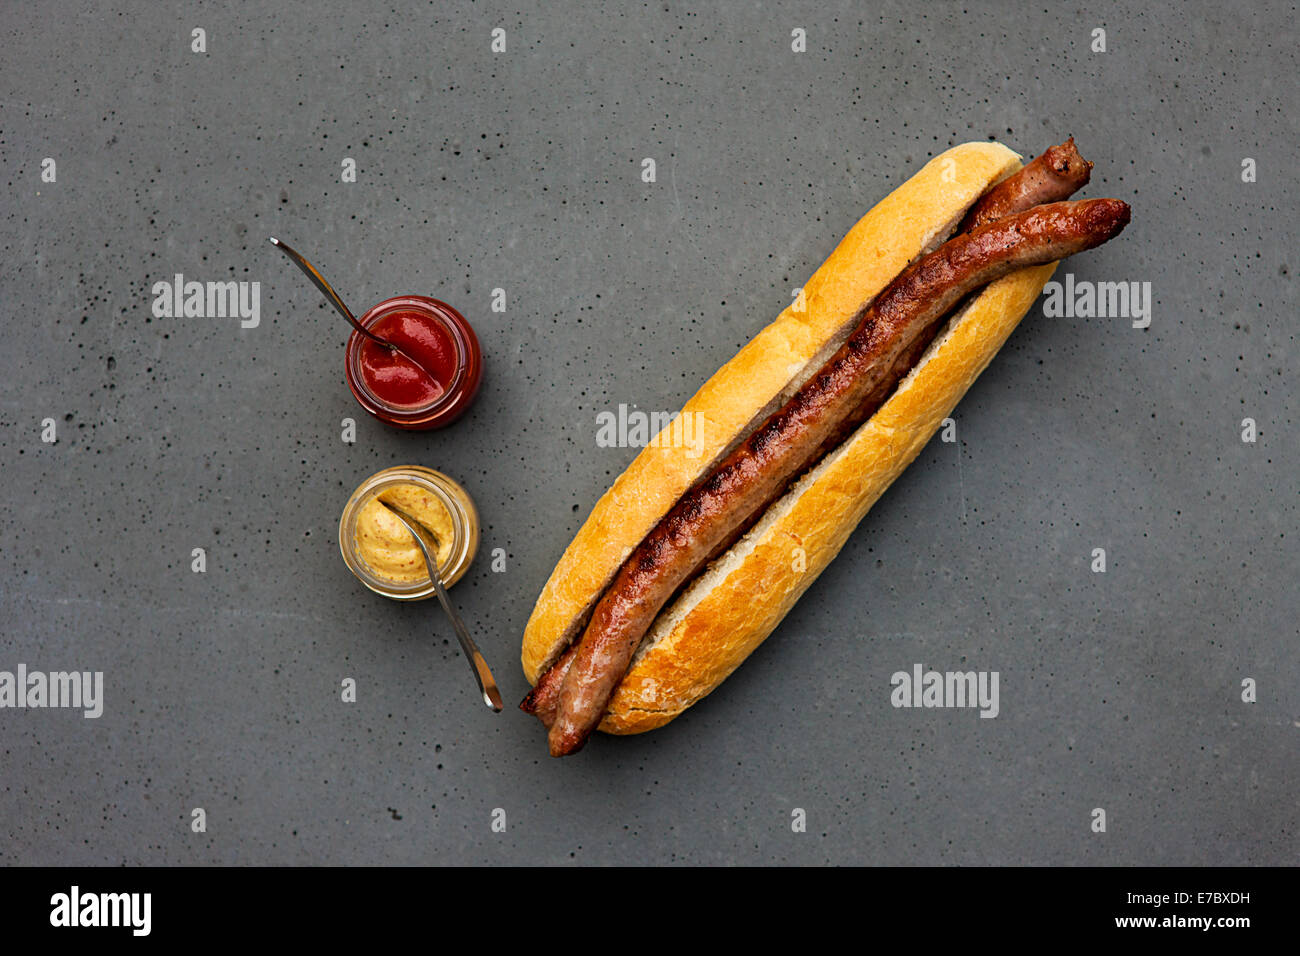 Clásico moderno hot dog con salchicha de cordero, bun, ketchup, mostaza en tabla de hormigón Foto de stock